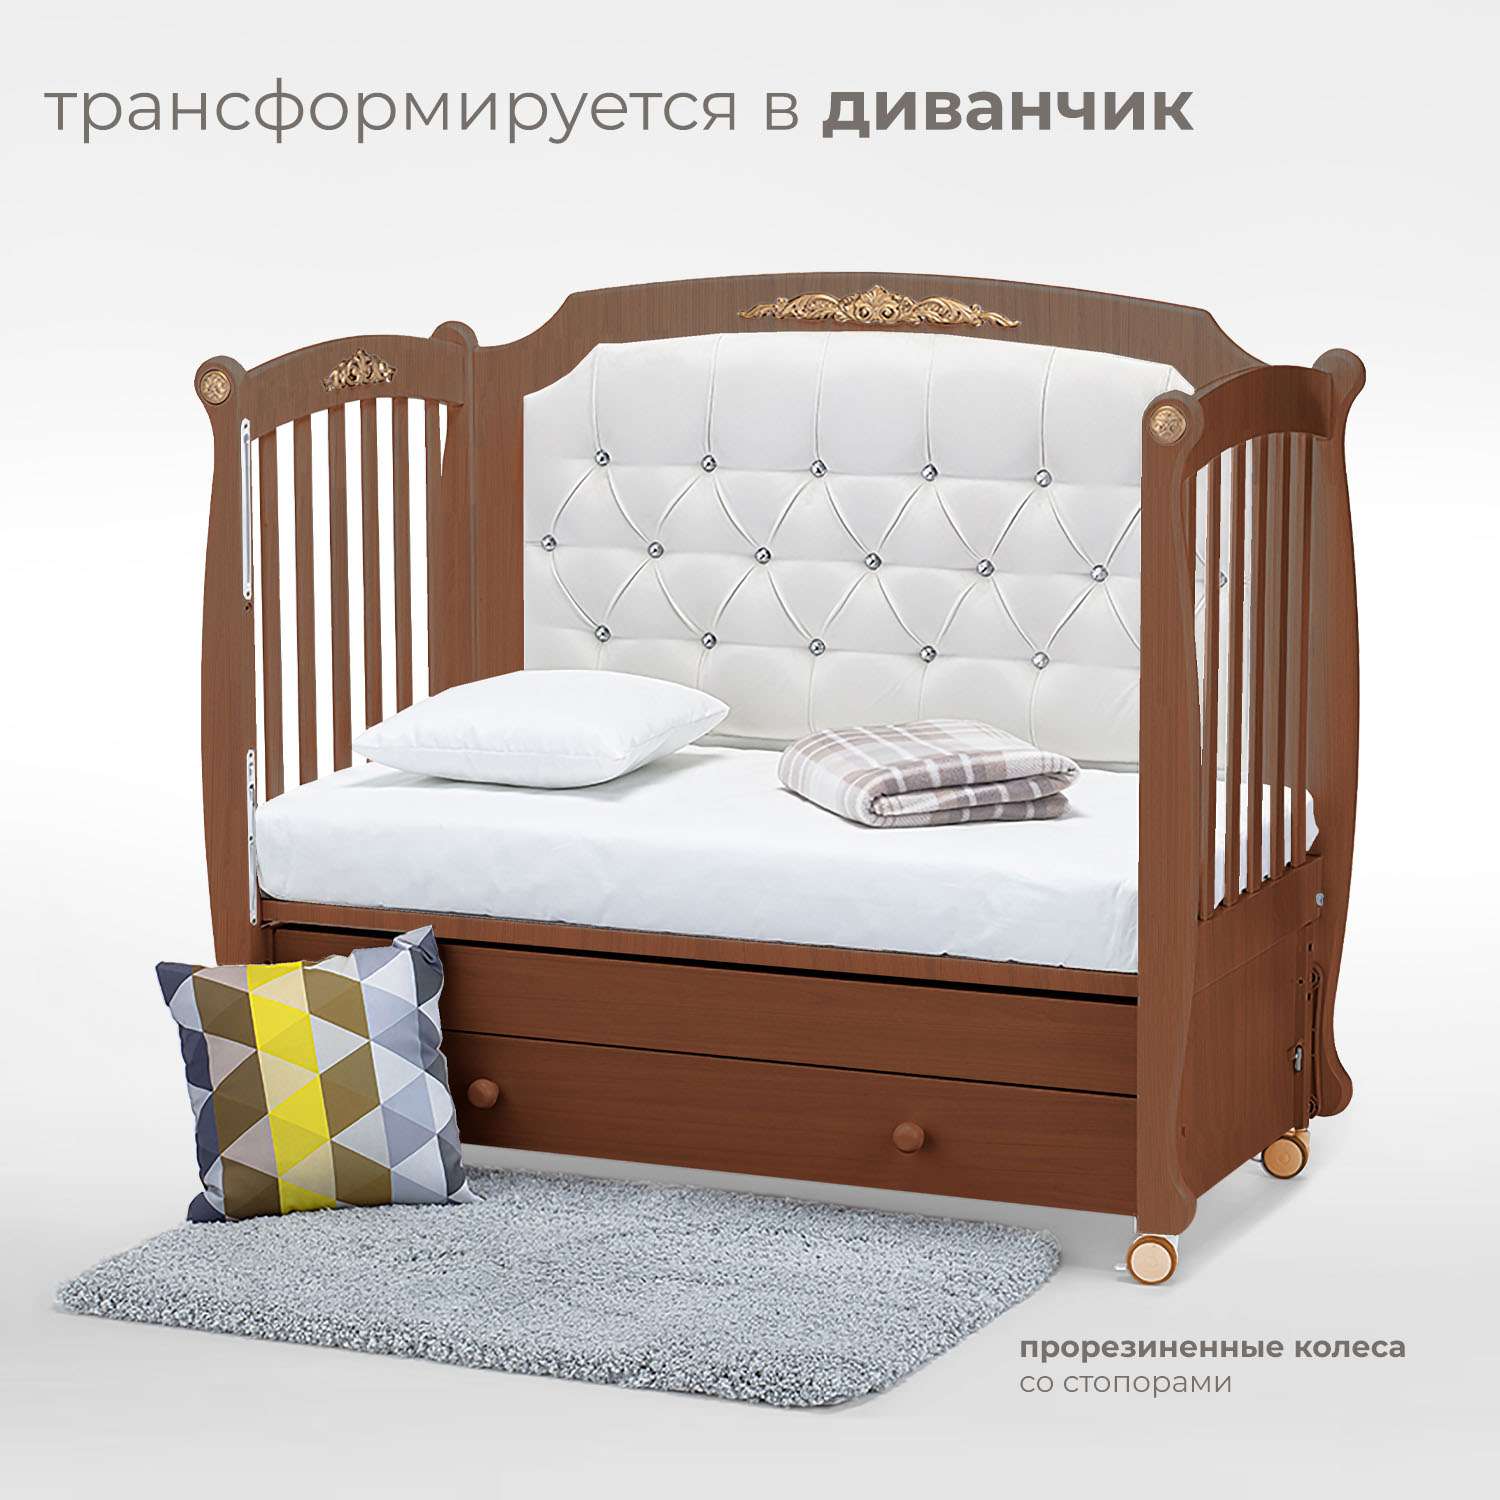 Детская кроватка Nuovita Furore Swing прямоугольная, продольный маятник (темный орех) - фото 5